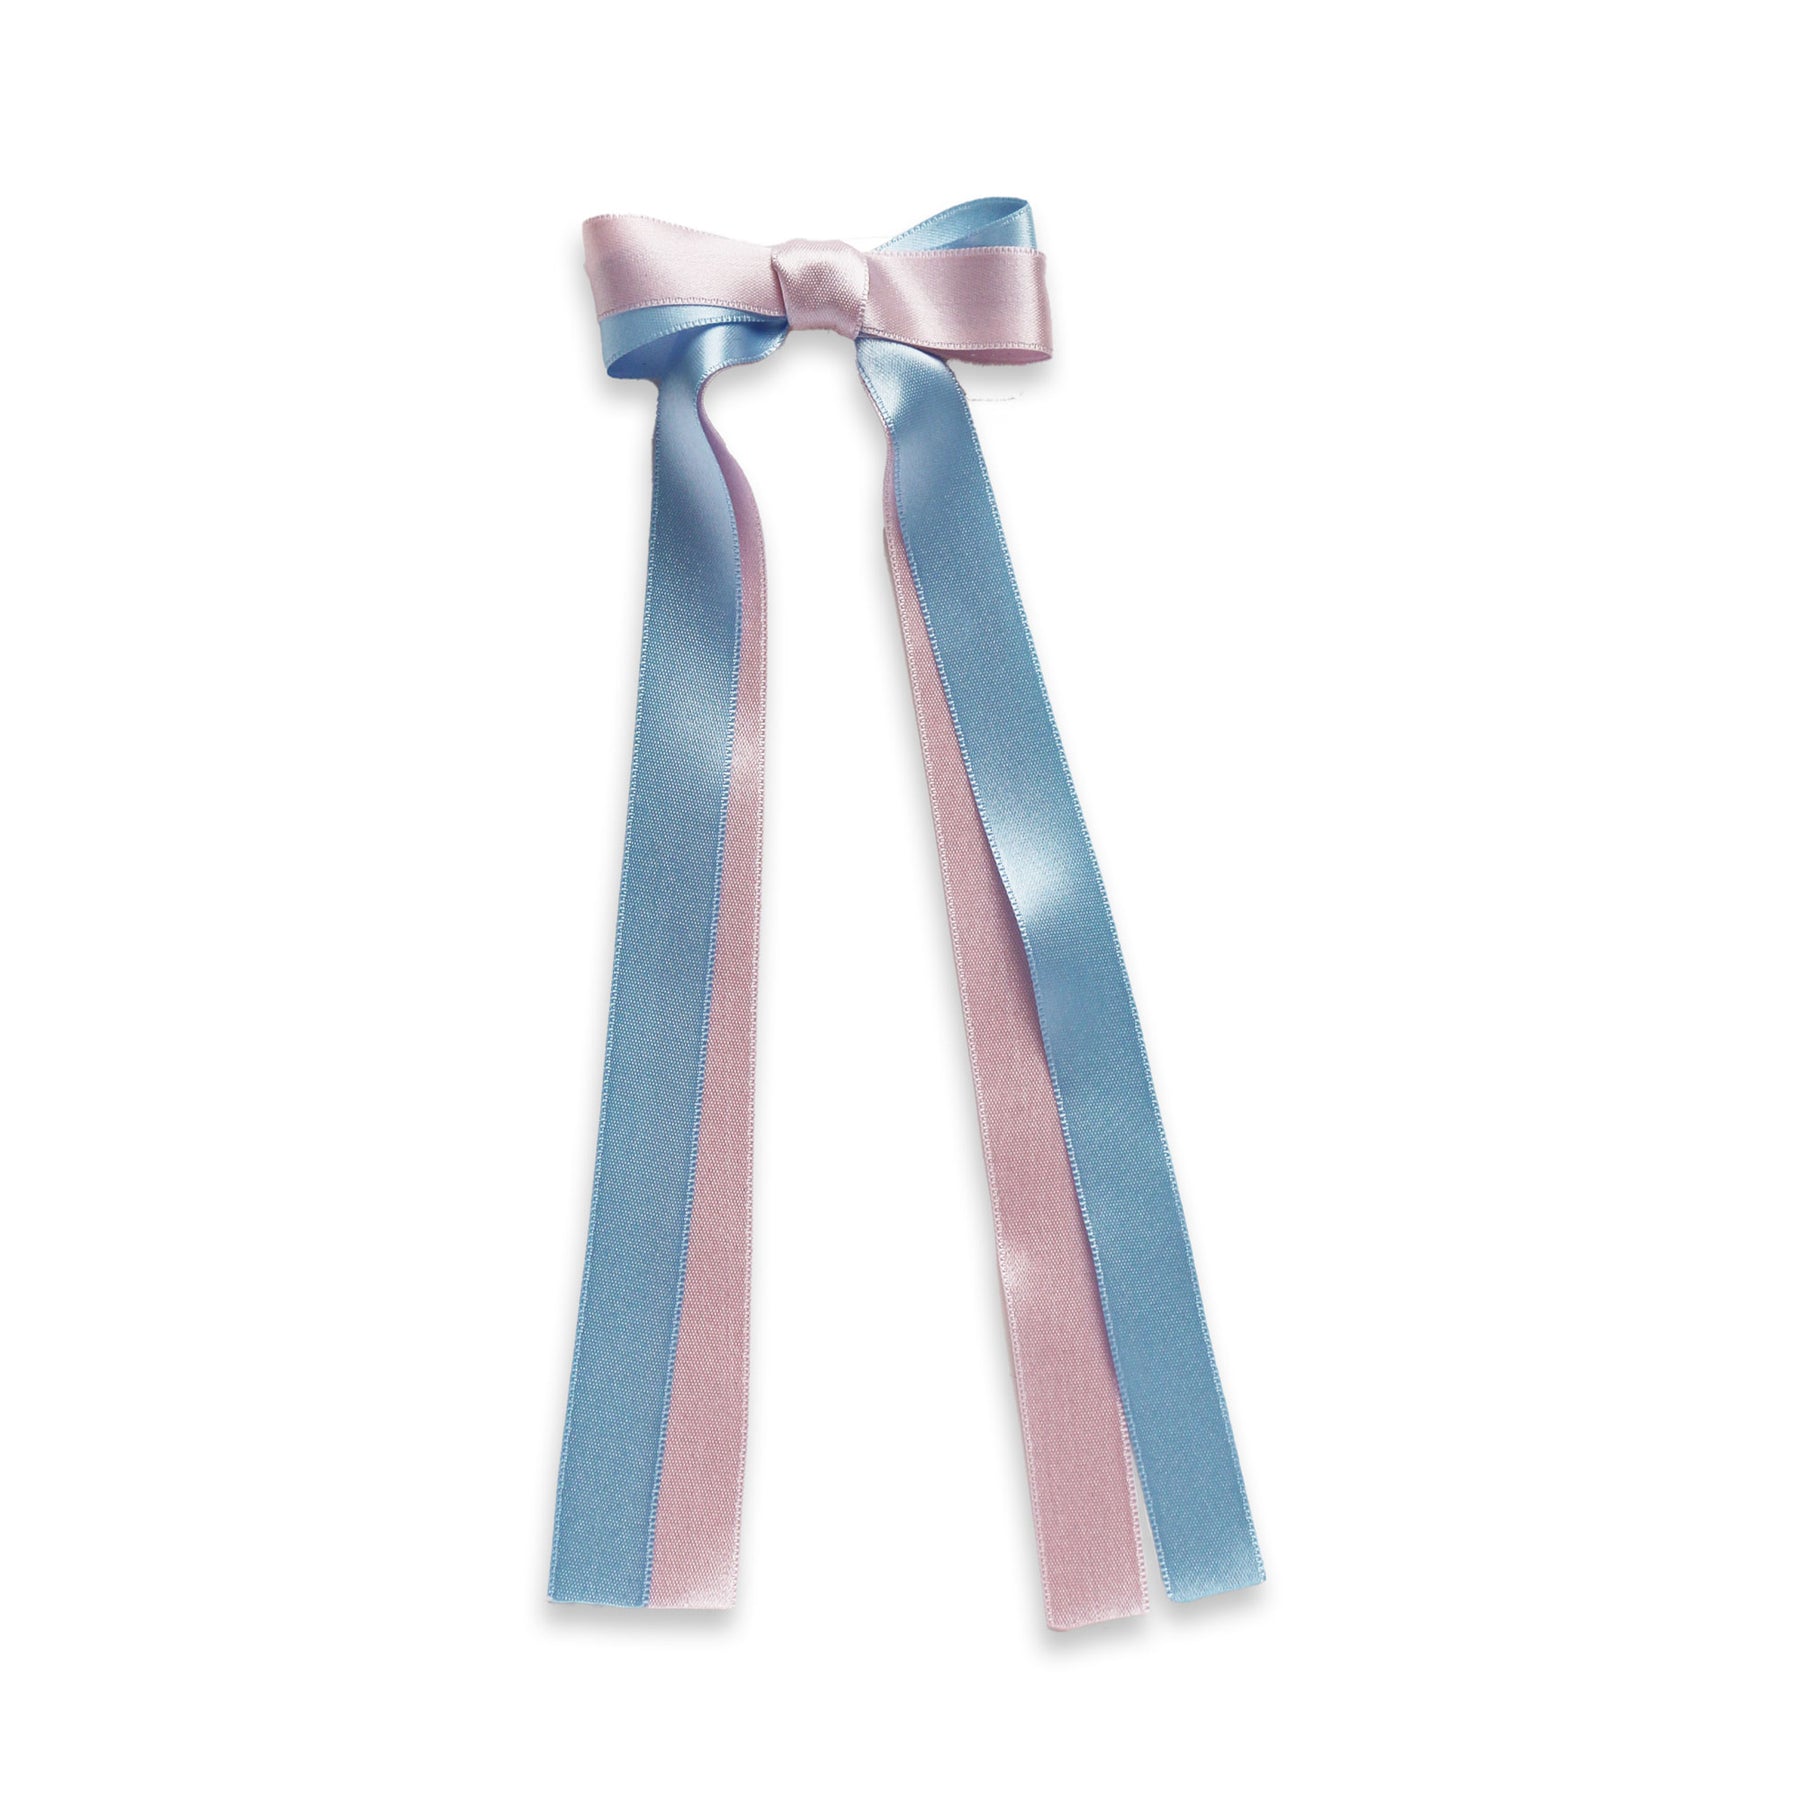 Pink Satin Ribbon Bow Ties / Double Ribbon Bows / Fabric Bowties